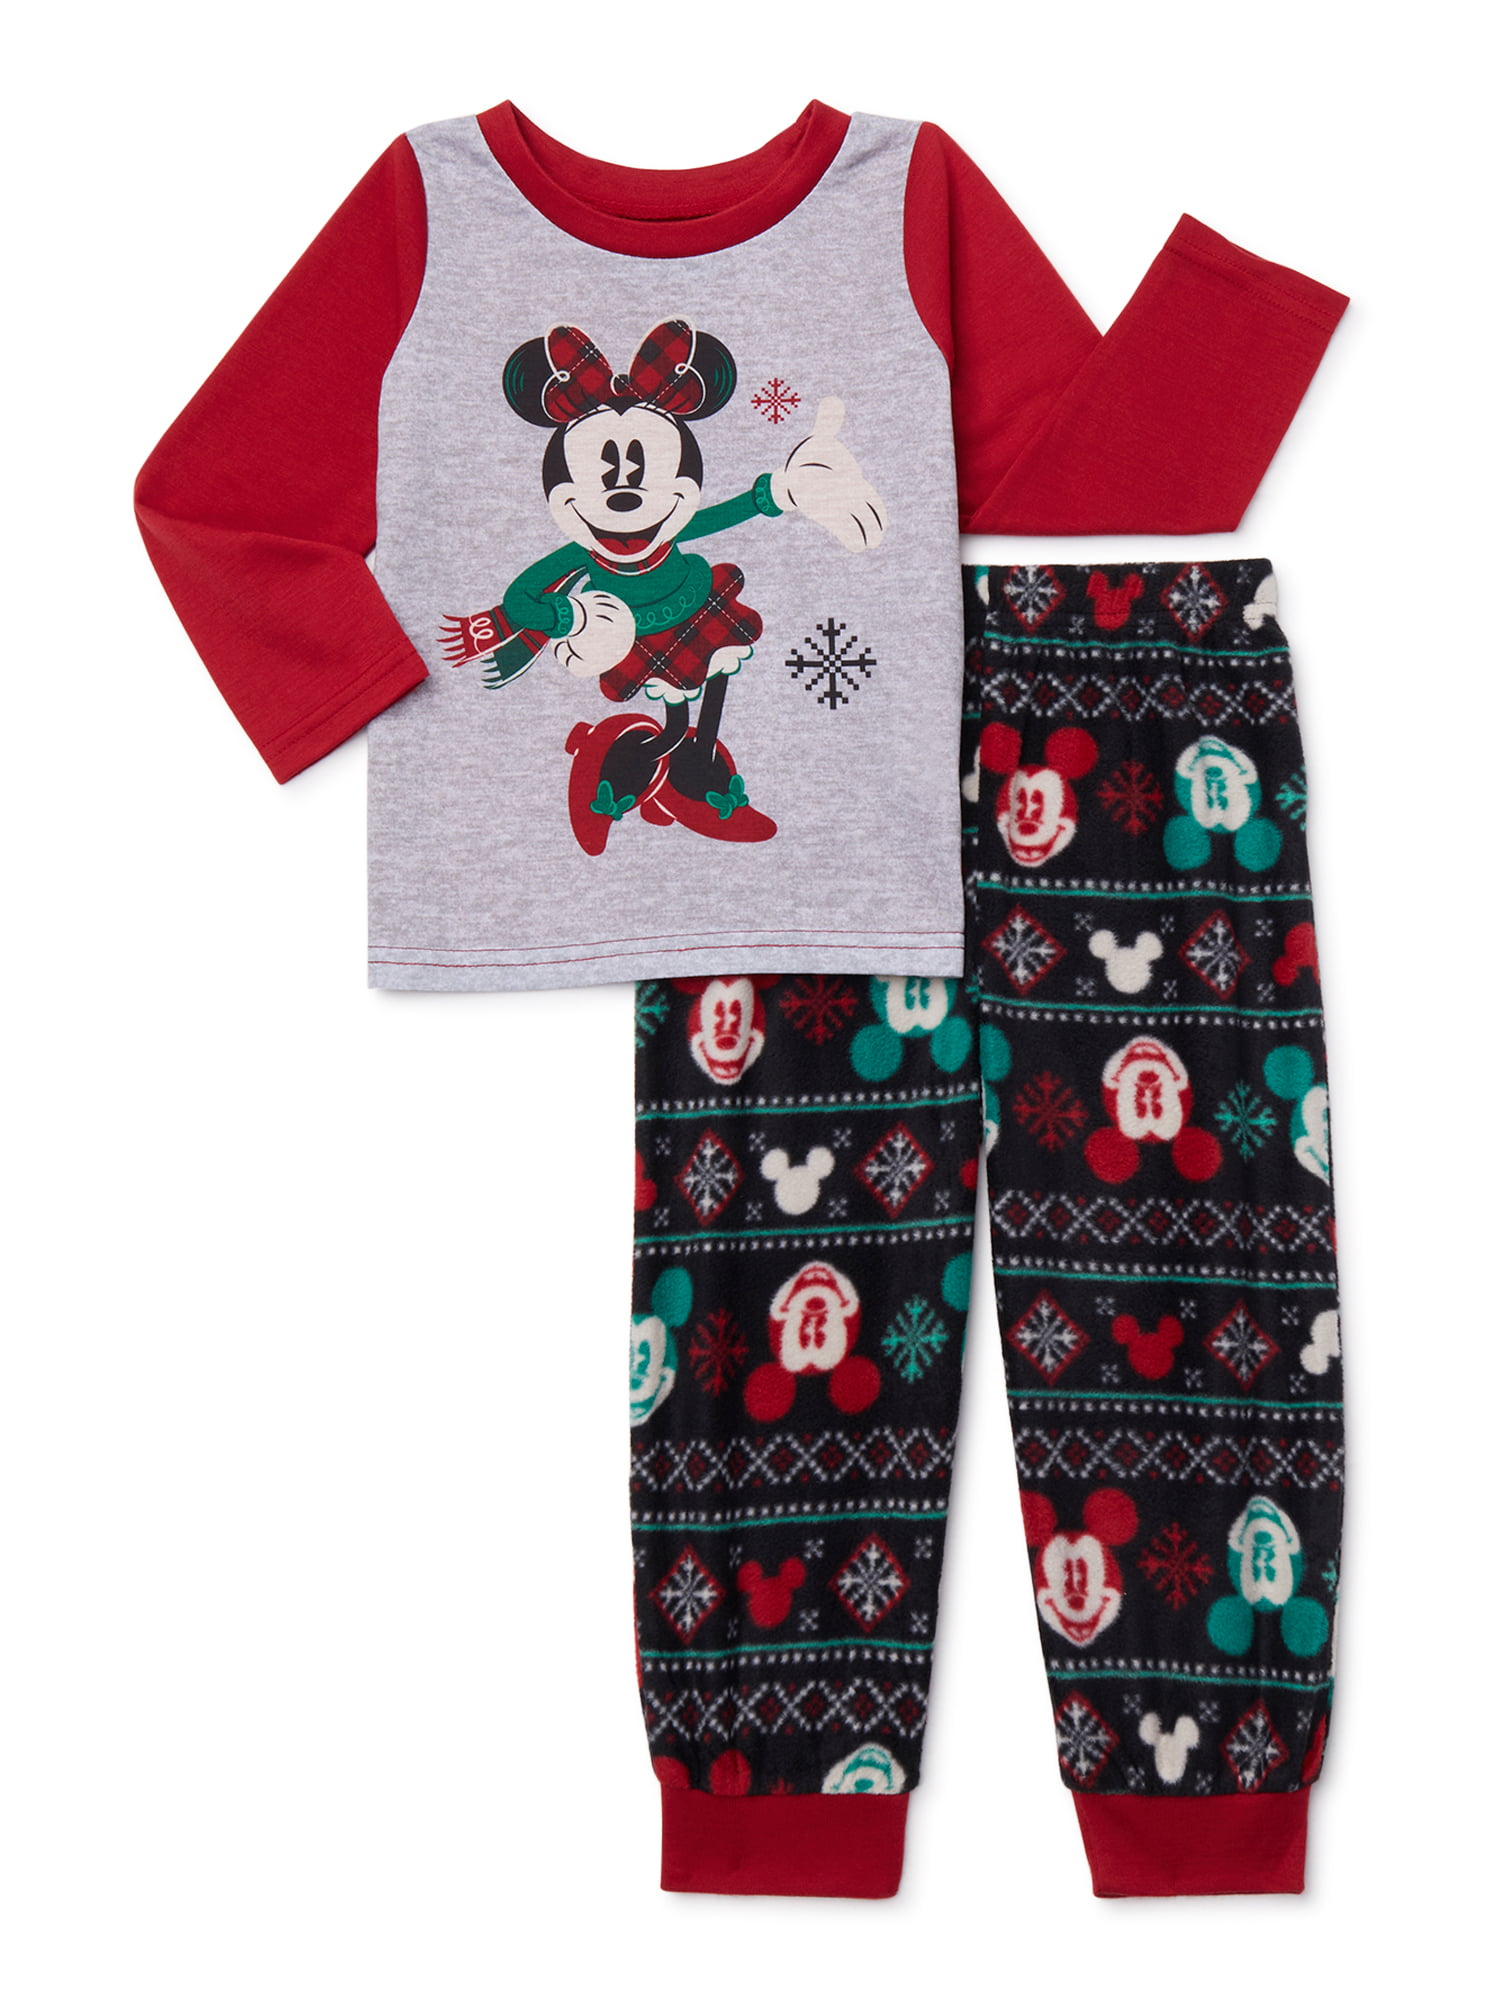 Disney - Matching Family Christmas Pajamas Girl's Minnie 2-Piece Pajama